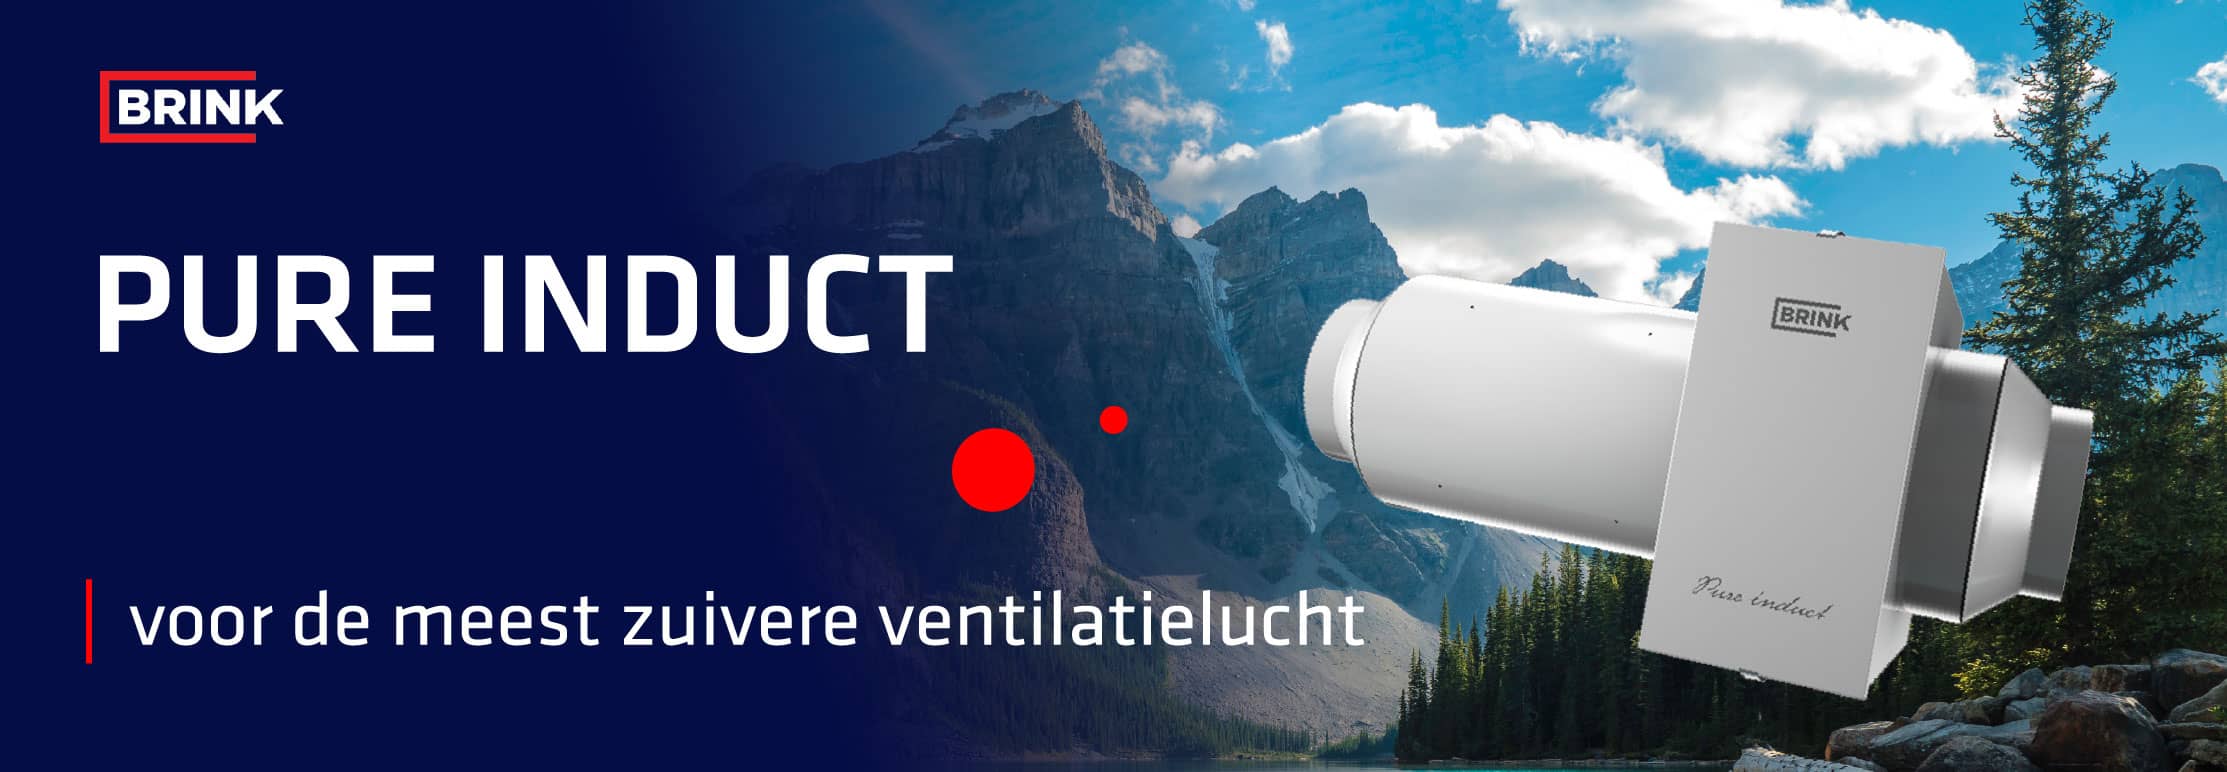 Pure Induct - voor de meest zuivere ventilatielucht